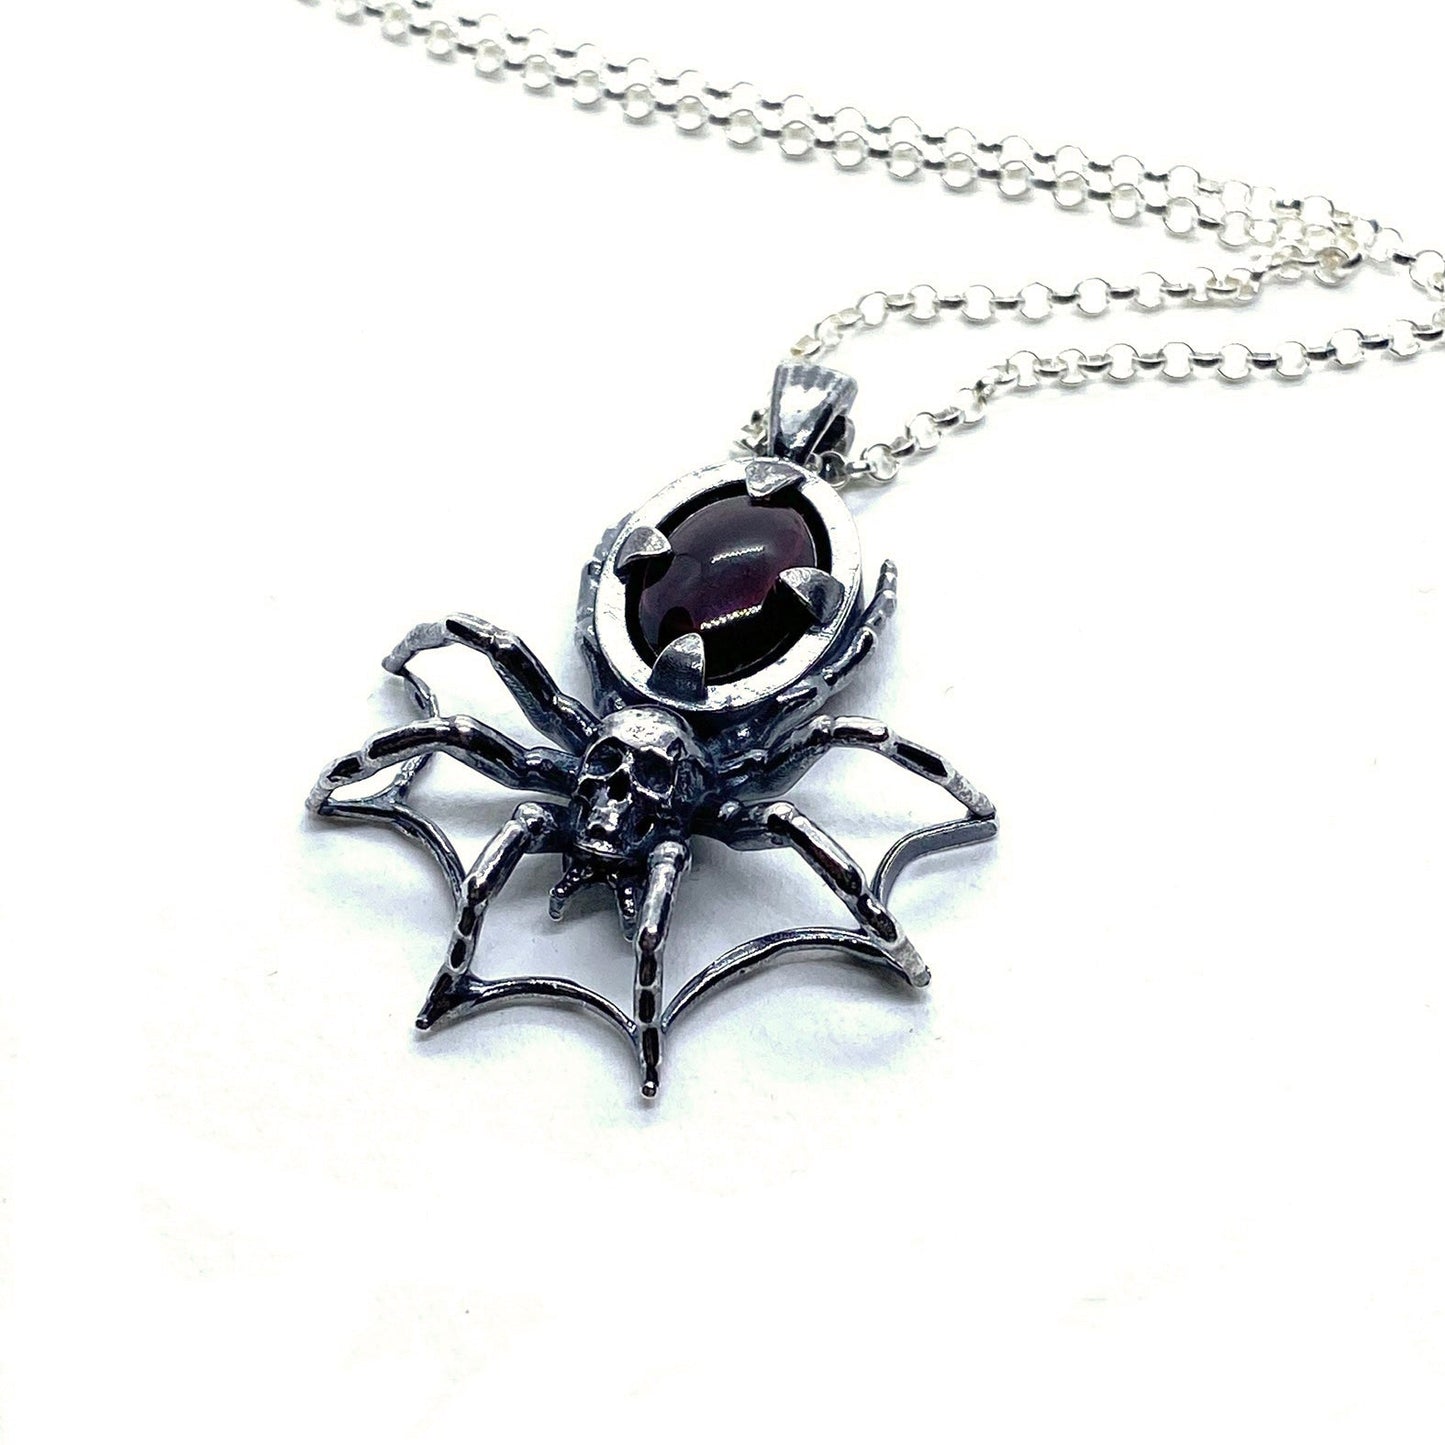 Spider Web Garnet Necklace Sterling Silver - Nocturne LLC